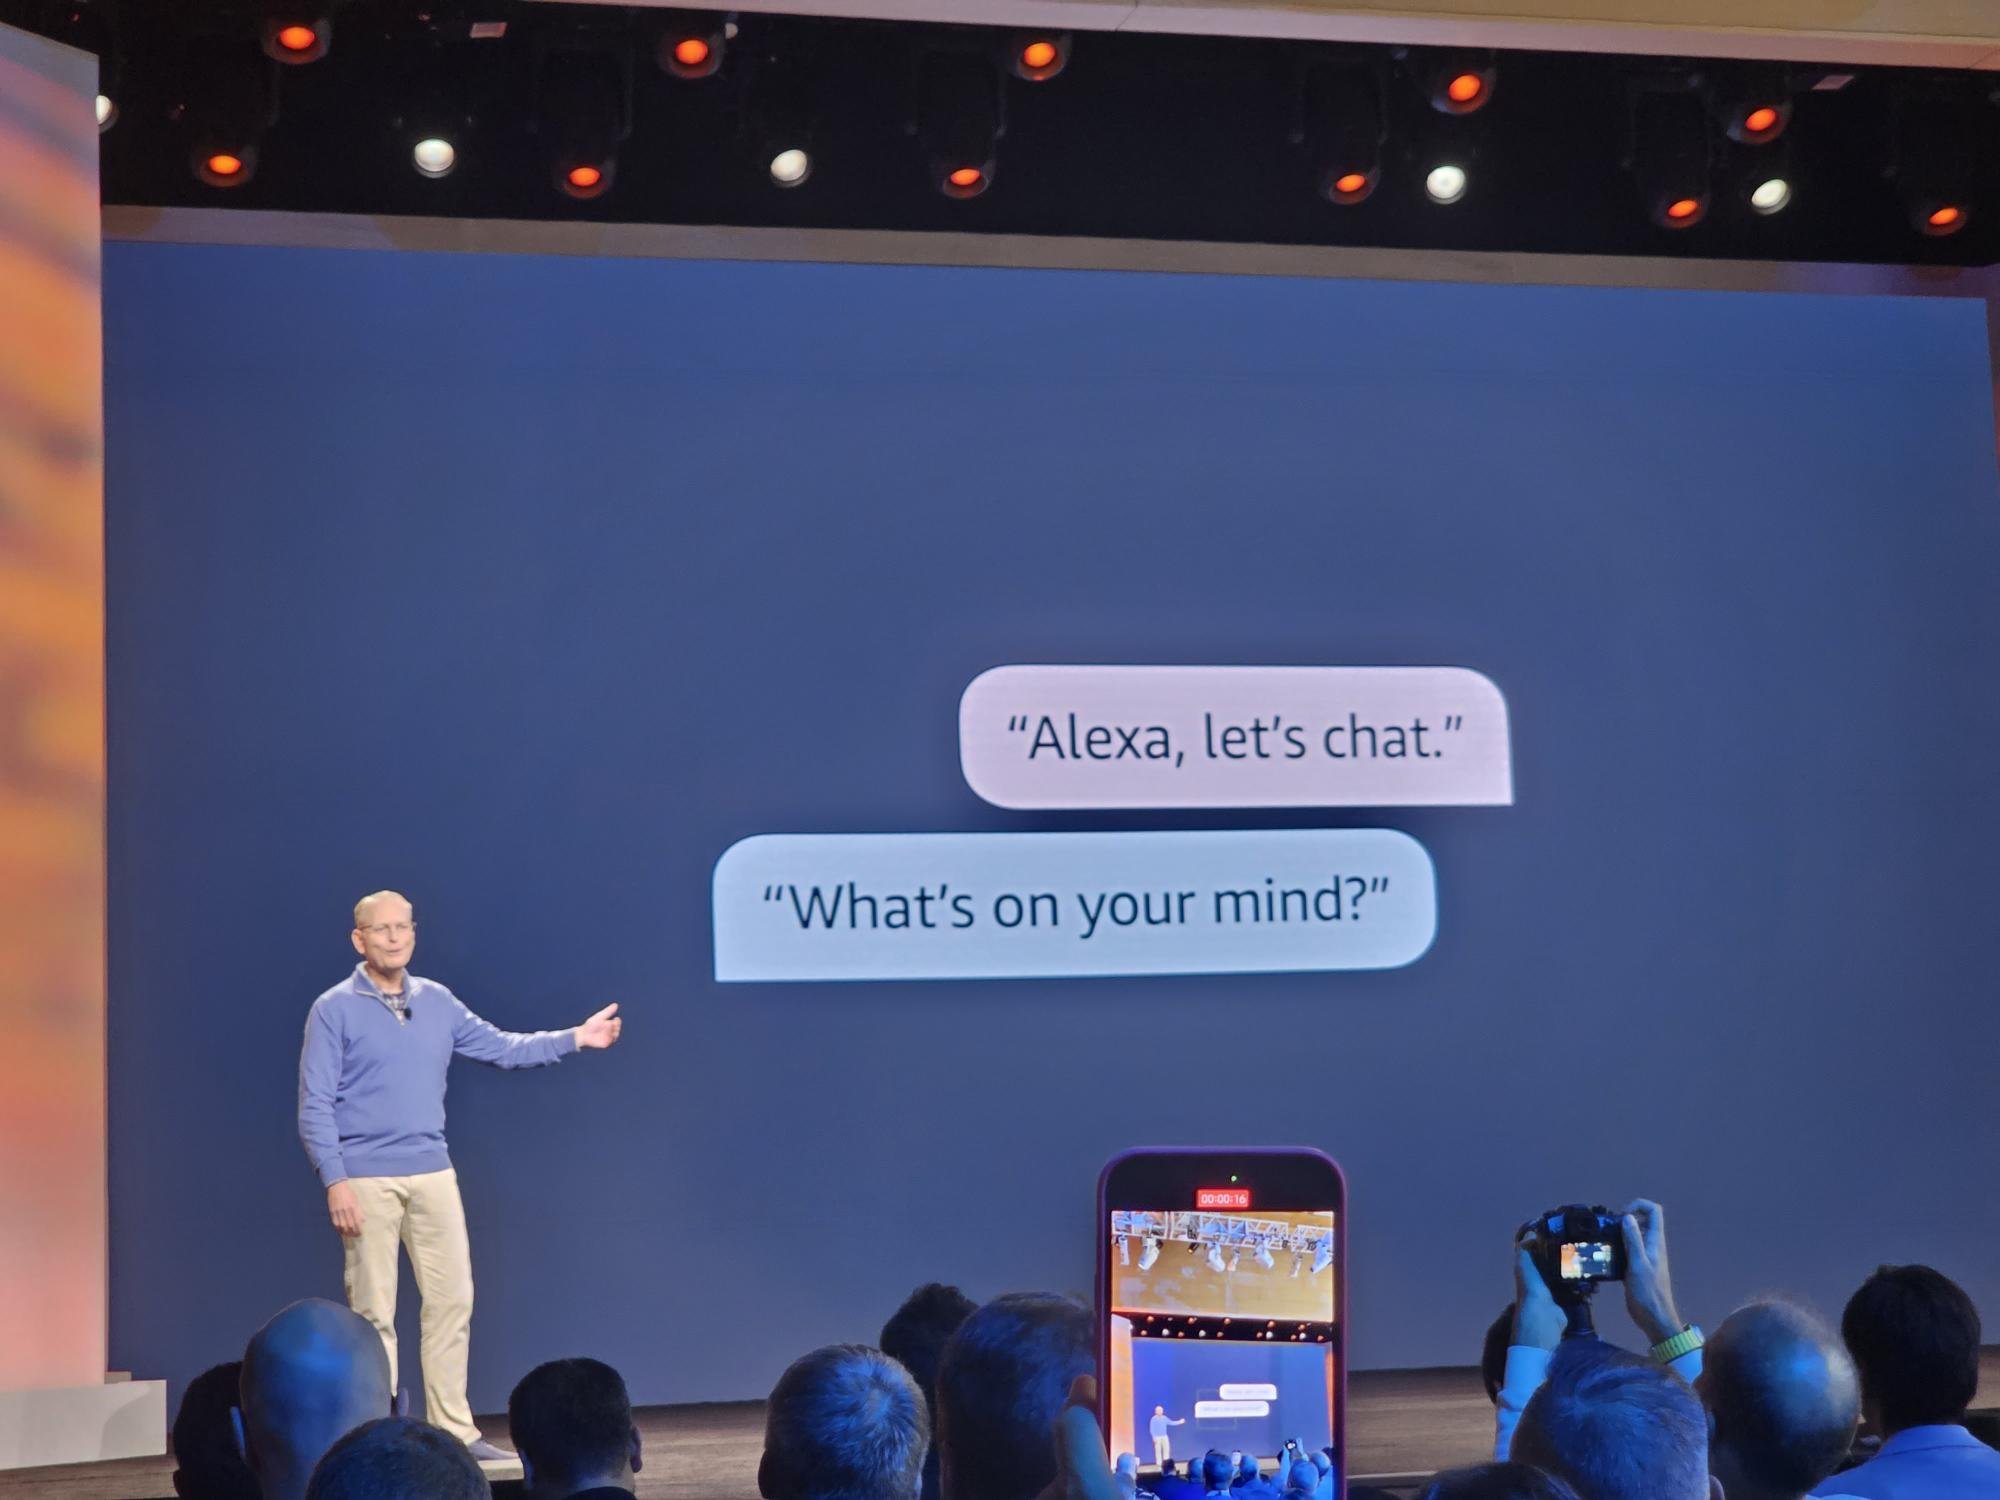 Experience new Alexa capabilities